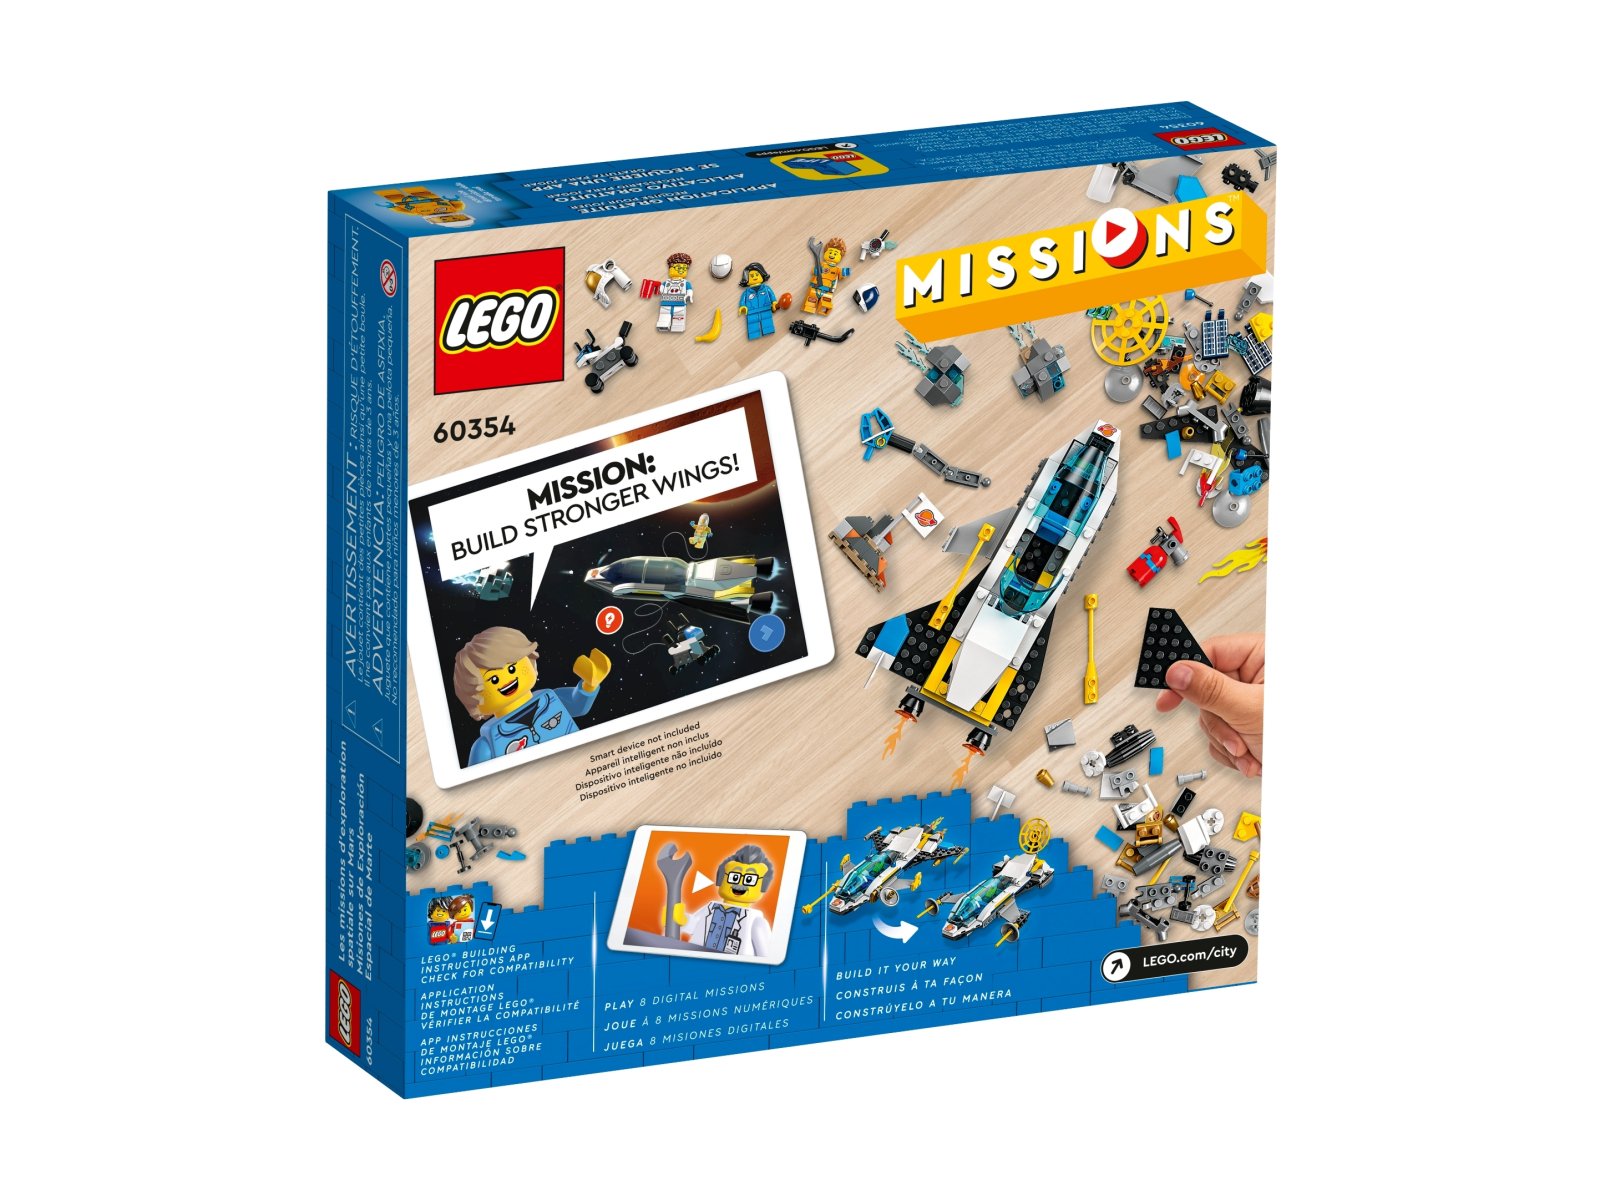 LEGO 60354 City Wyprawy badawcze statkiem marsjańskim